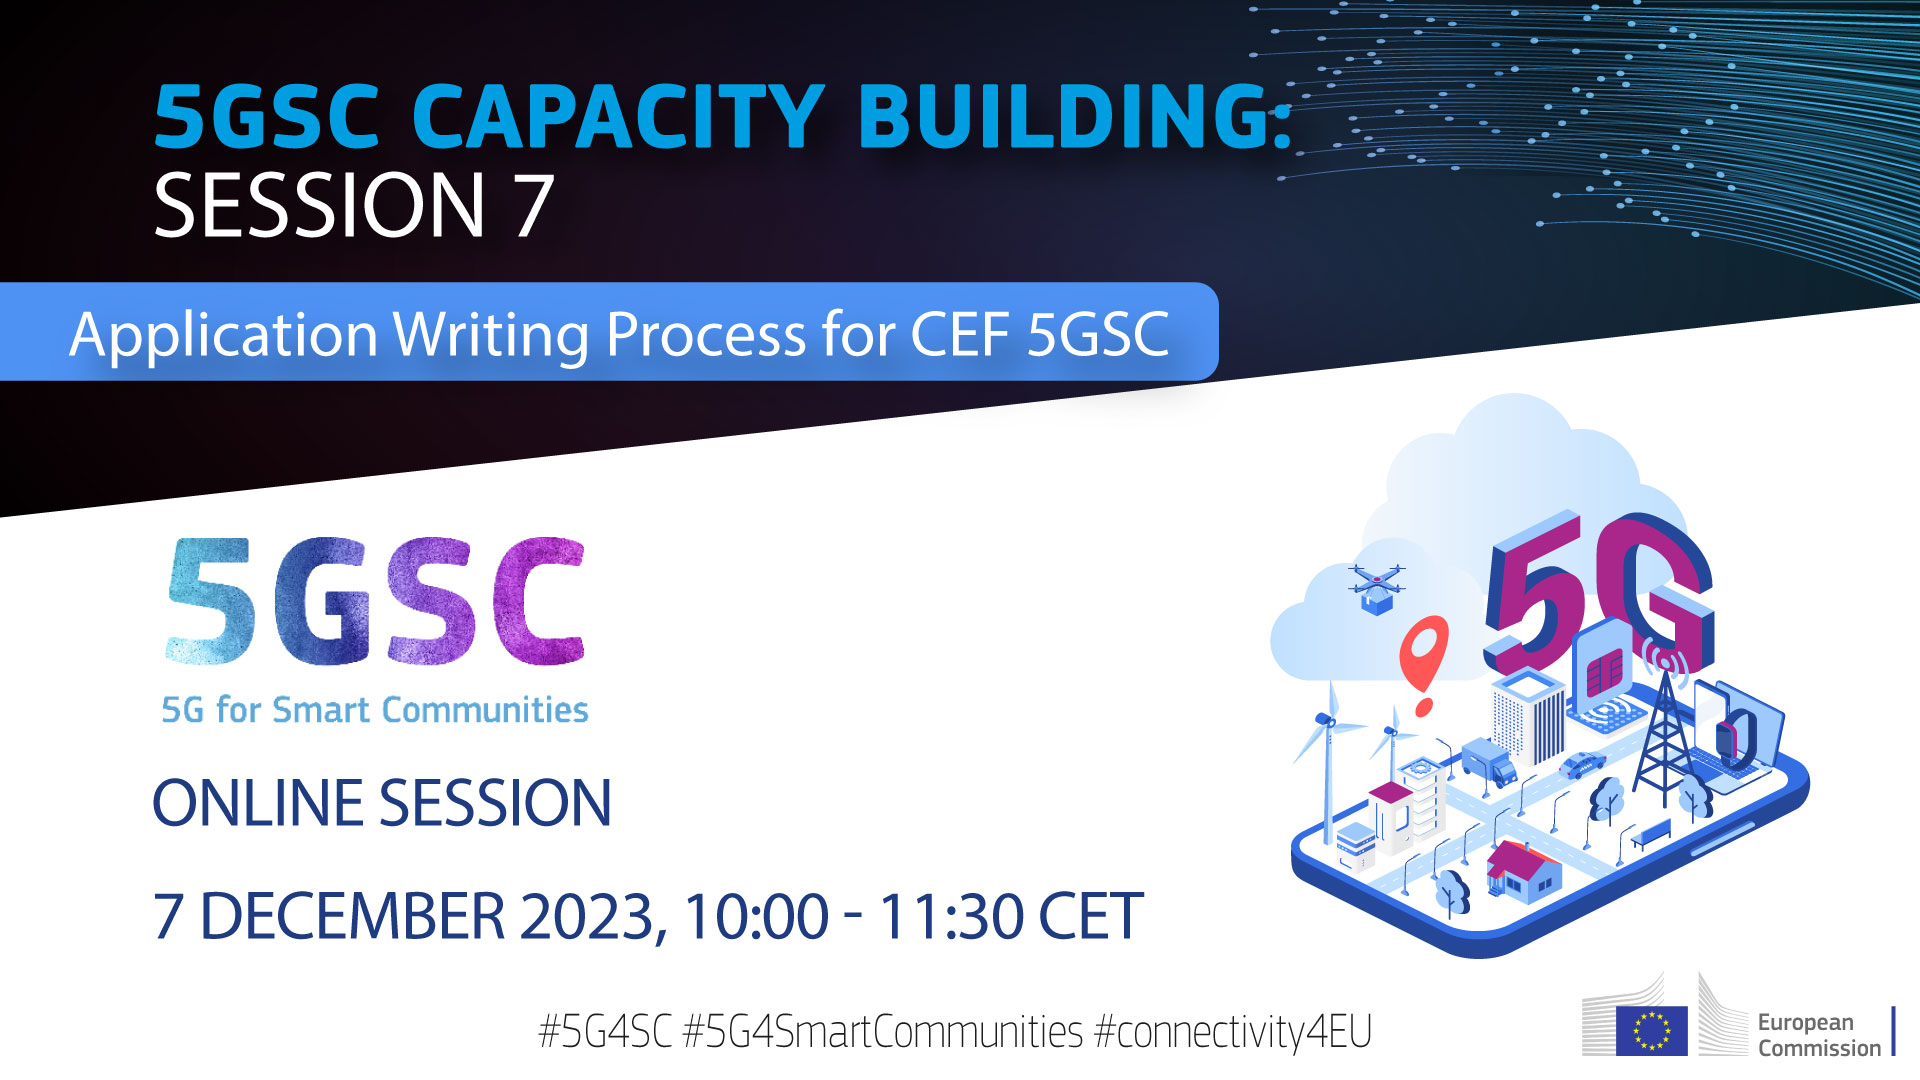 renginio plakatas su tekstu 5GSC paramos platforma kviečia jus į būsimą 5GSC gebėjimų stiprinimo 7-ąją sesiją „Programų valdymas EITP 5GSC“ ir renginio data/laikas.